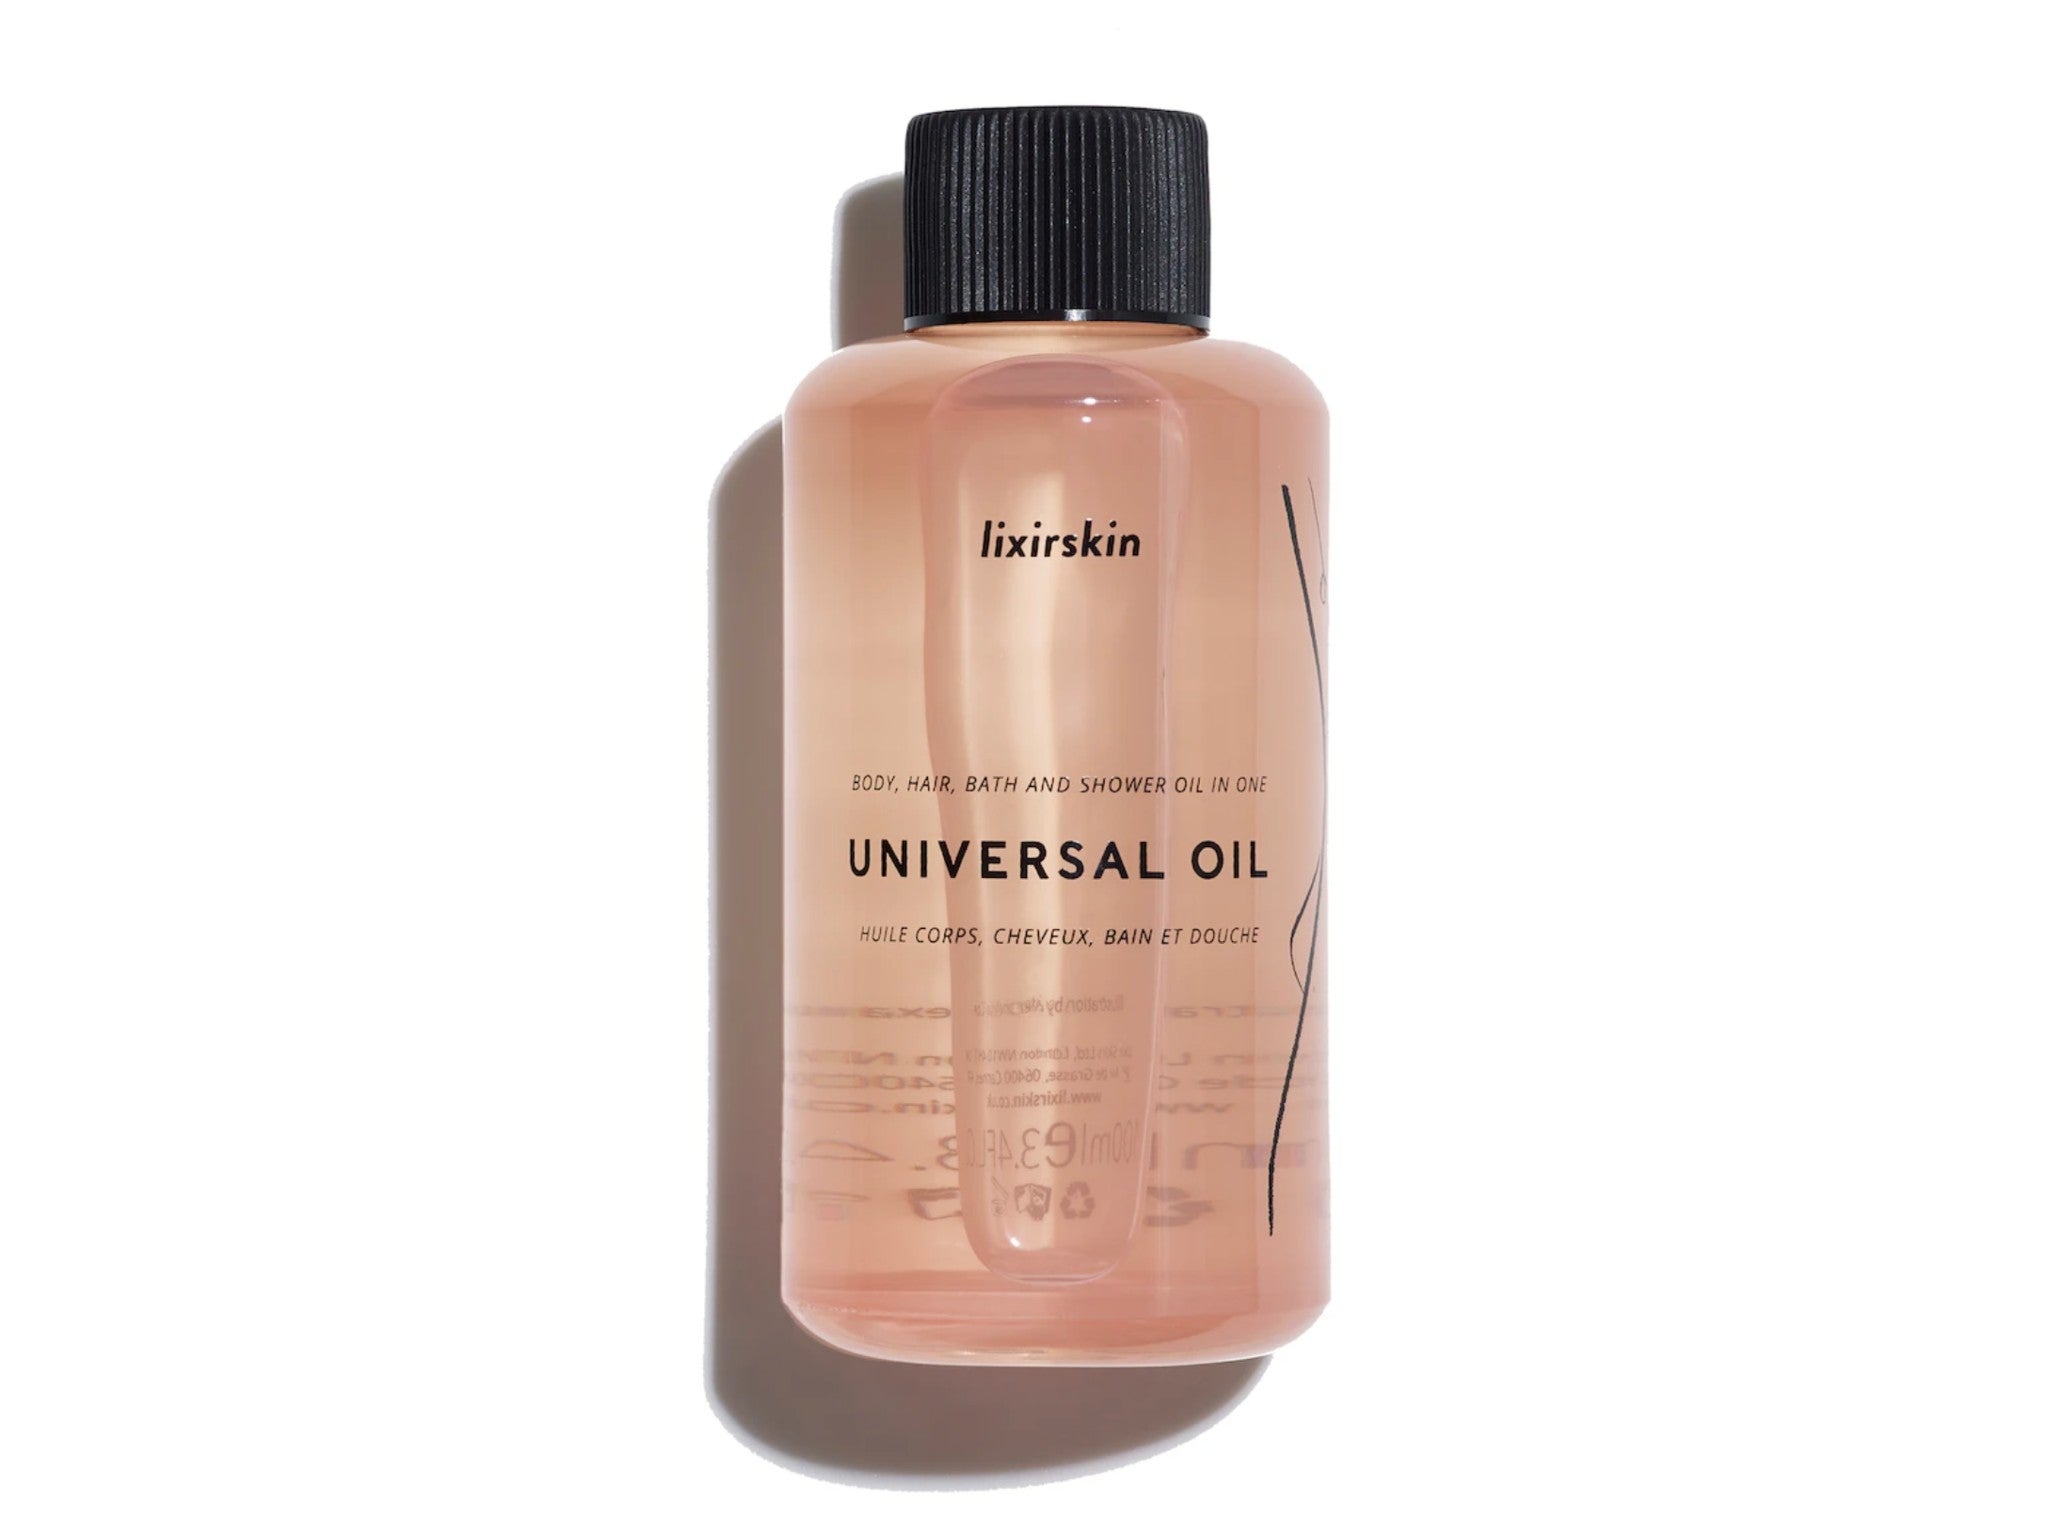 Lixirskin universal oil, 100ml  indybest.jpeg